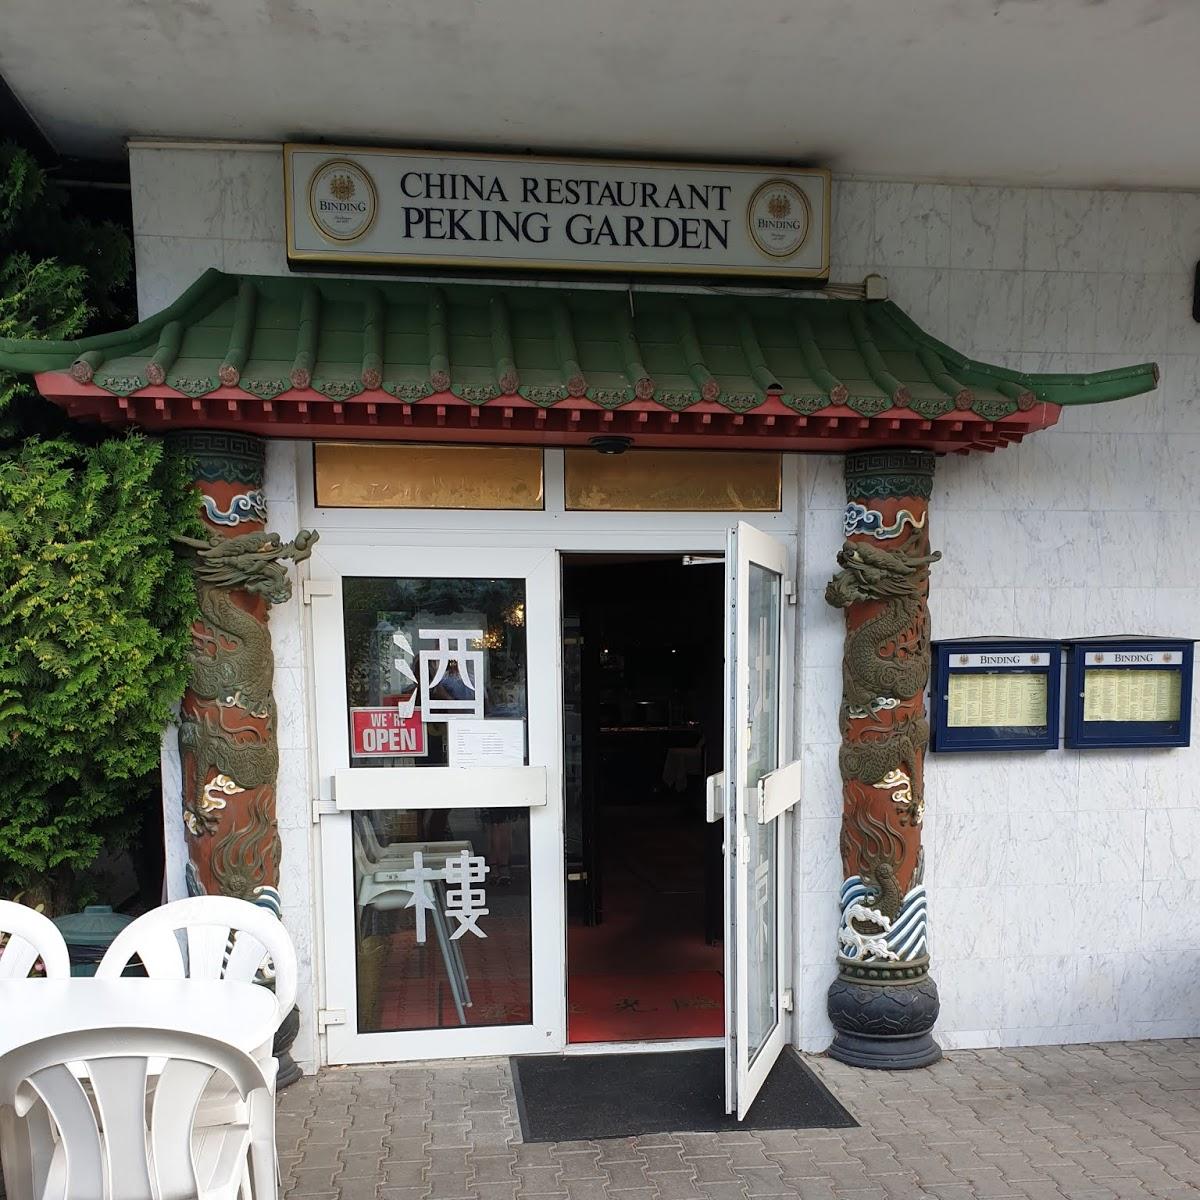 Restaurant "Peking Garden" in Dreieich